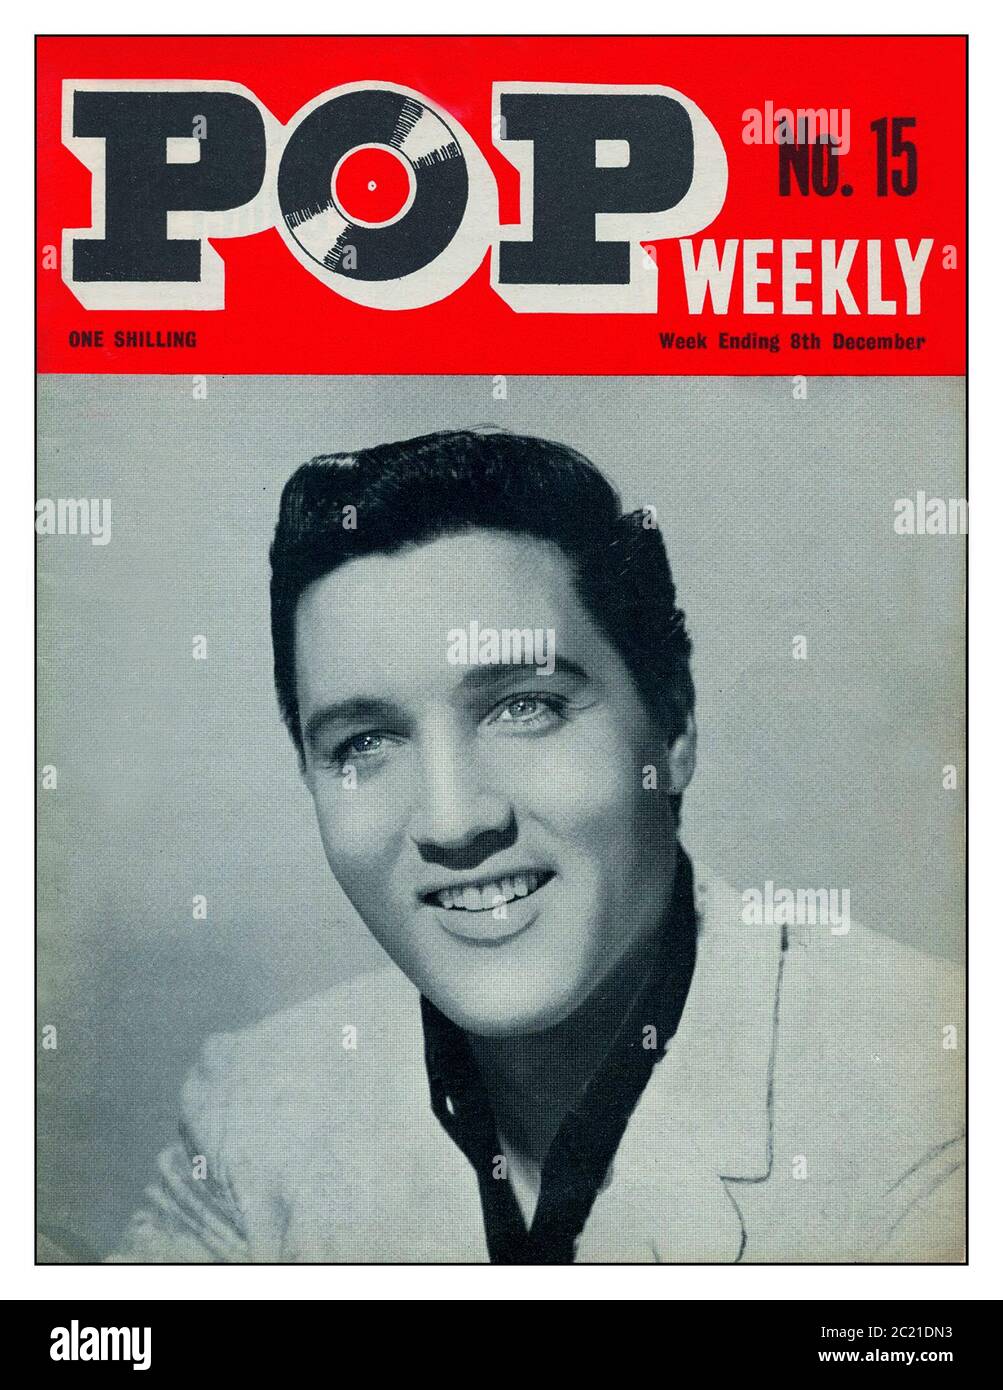 Elvis Presley Vintage 1960s britisches Archiv 'POP Weekly' No 15 Magazin mit Elvis Presley Werbe-Studio-Portrait-Frontcover. 8. Dezember 1963 Preisgeld bei einem Shilling £sd Währung Publikation UK Teenagers Musik Zeitschrift News für POP-Fans der 60er Jahre Stockfoto